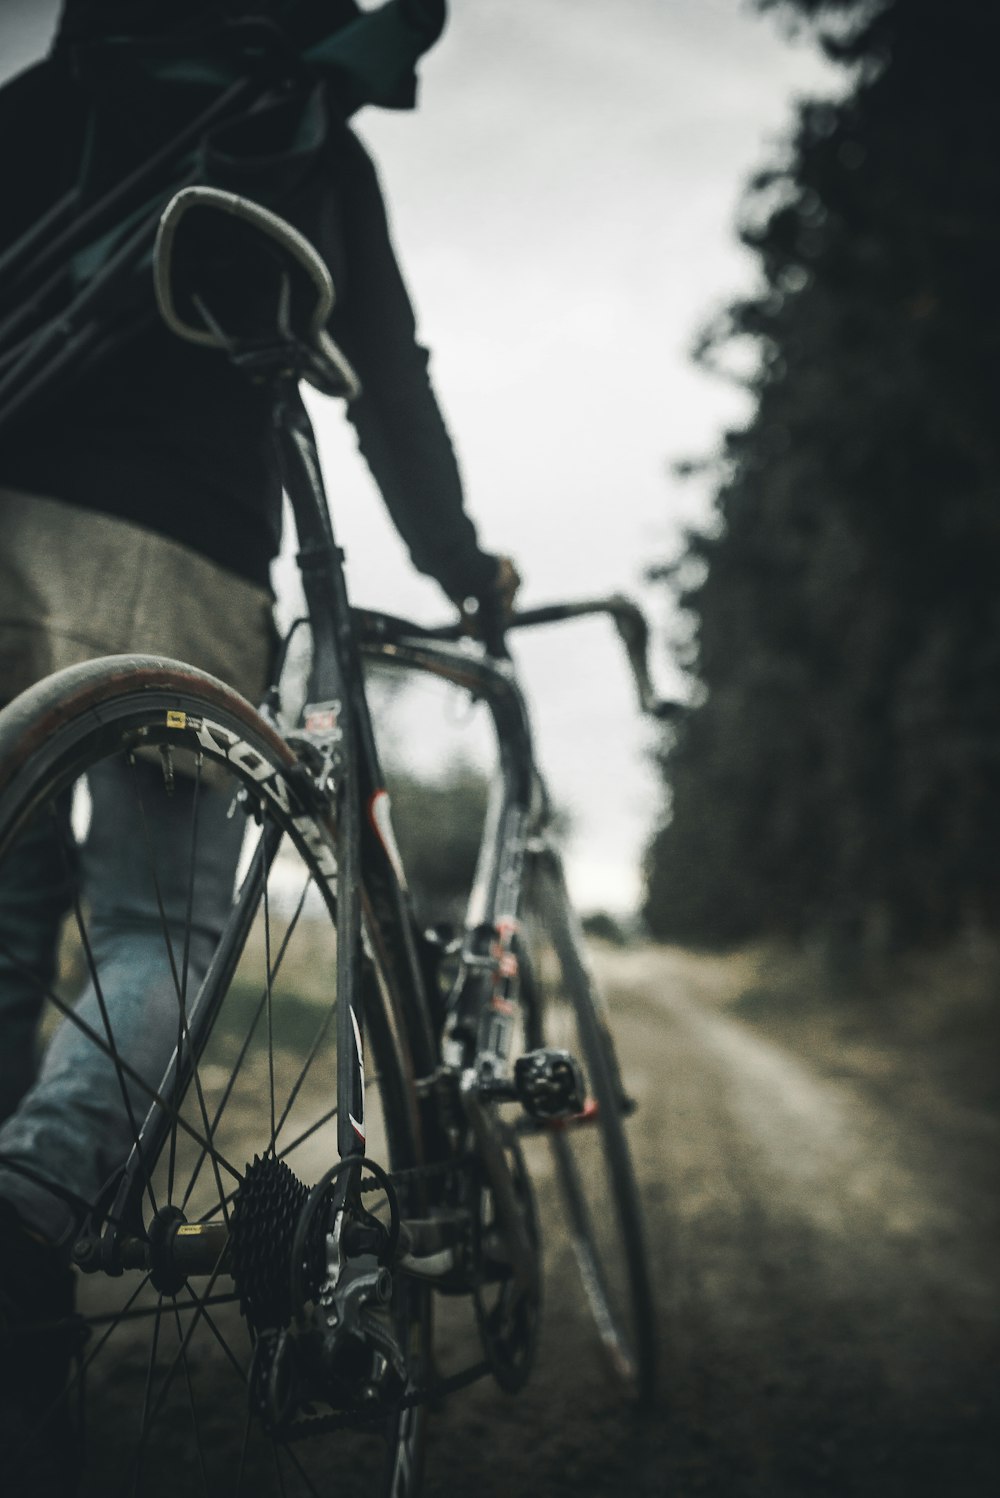 도로에서 회색 도로 자전거를 들고 있는 사람의 선택적 초점 사진